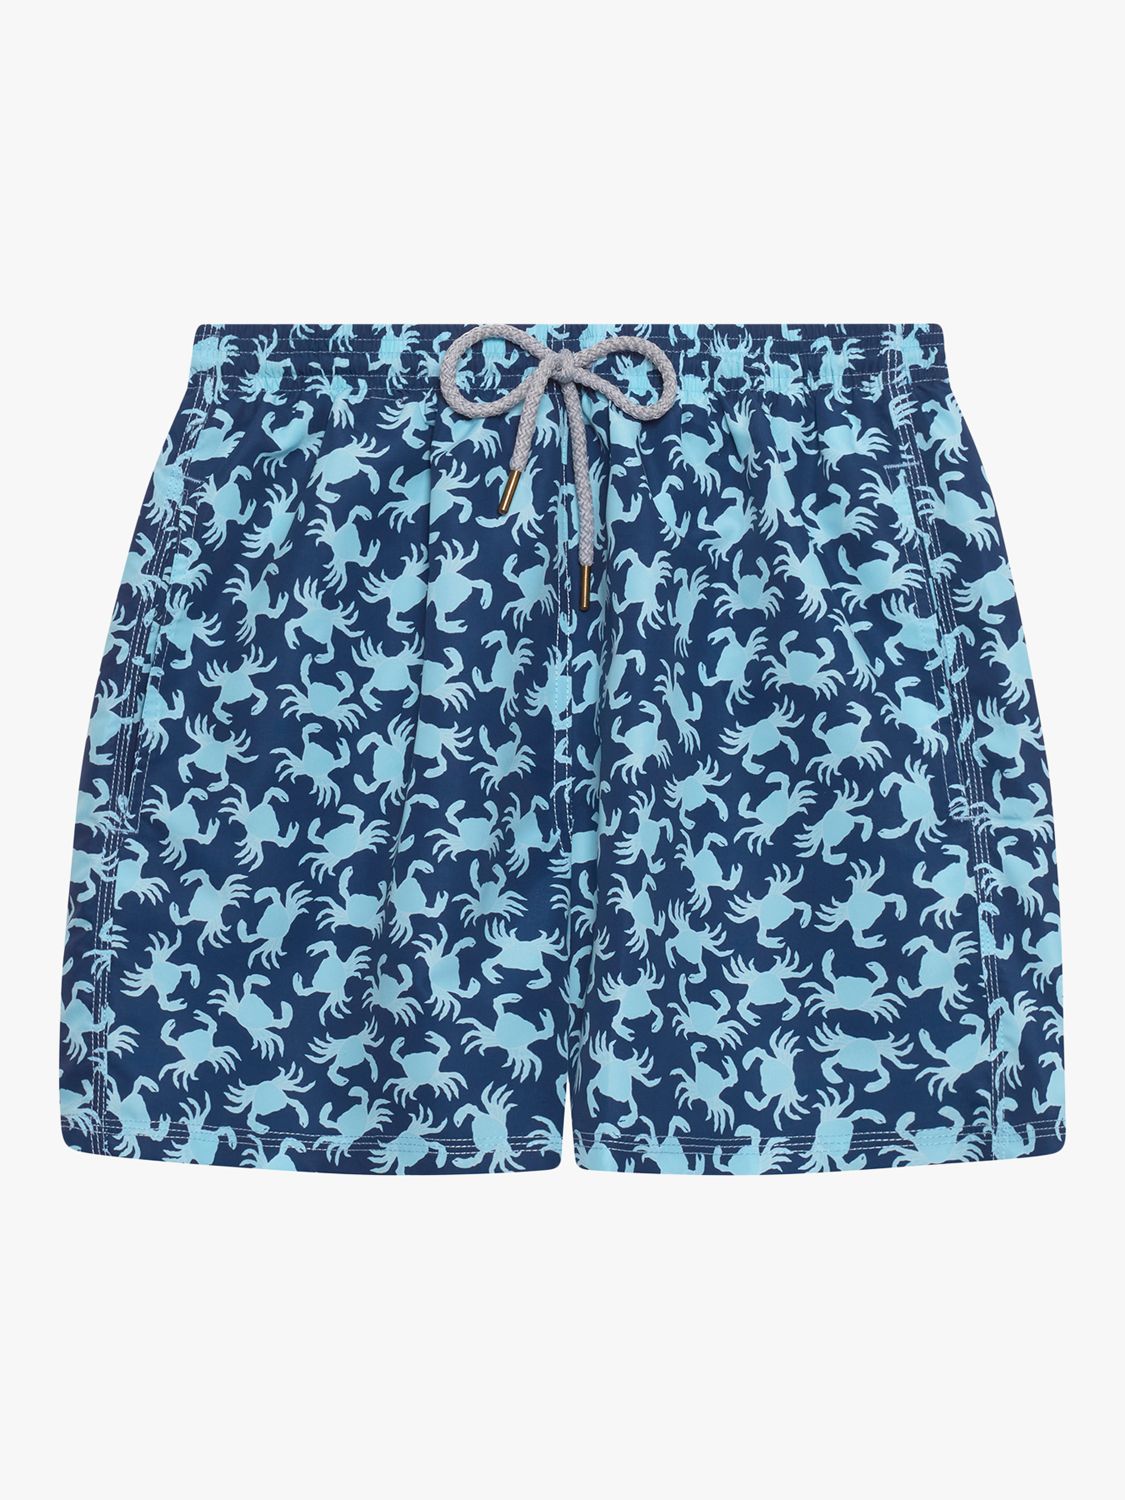 Trotters Crab Swim Shorts, Navy/Aqua, L